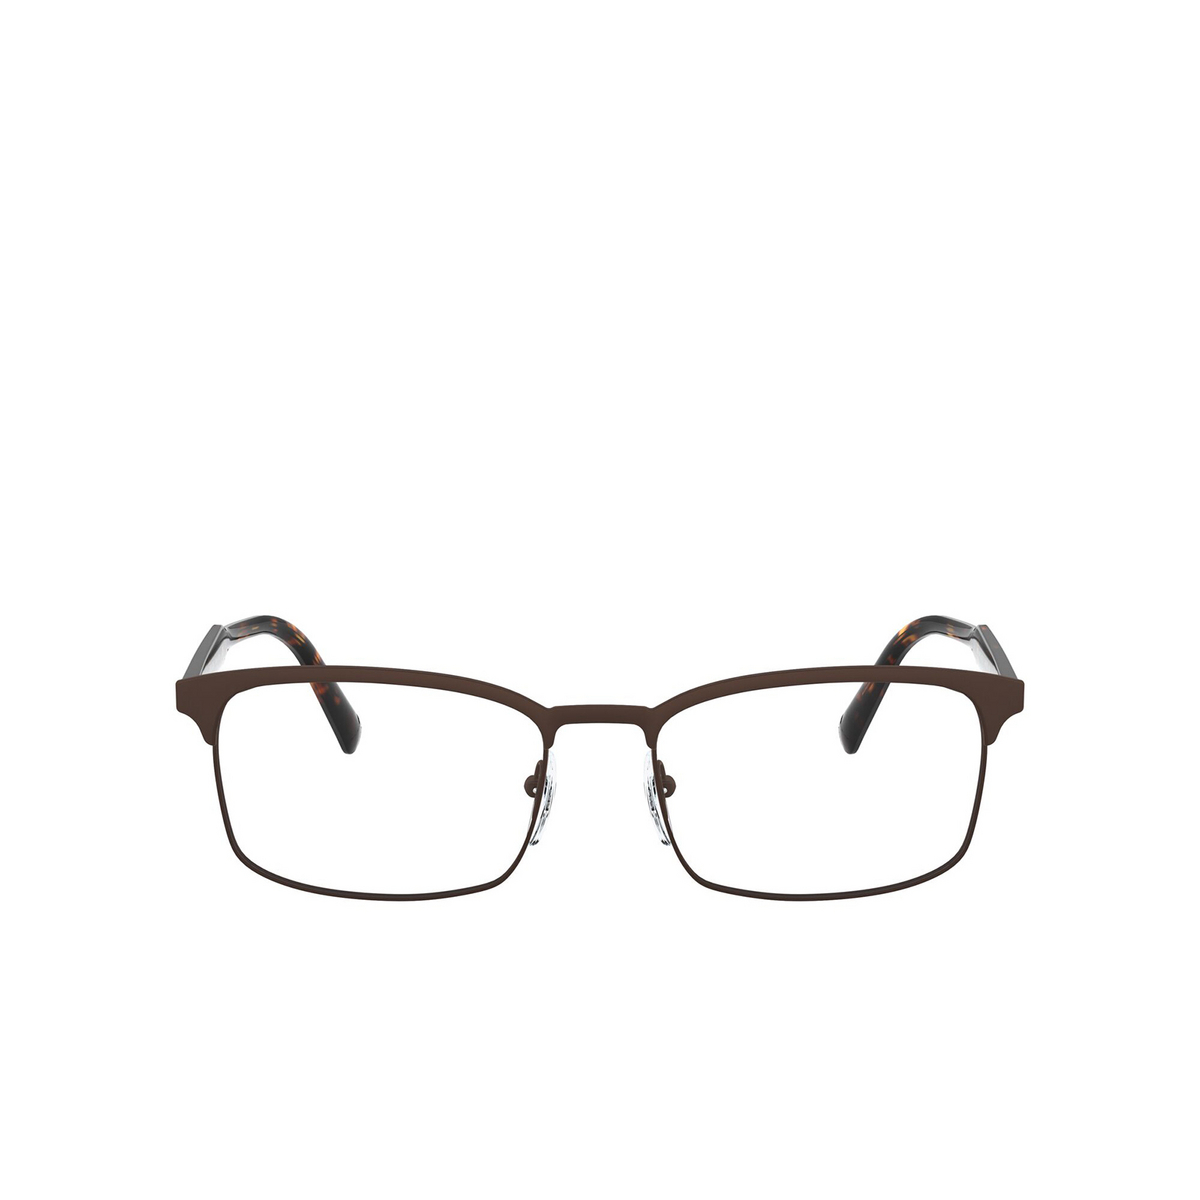 Prada® Rectangle Eyeglasses: PR 54WV color Matte Burnished GAP1O1 - front view.